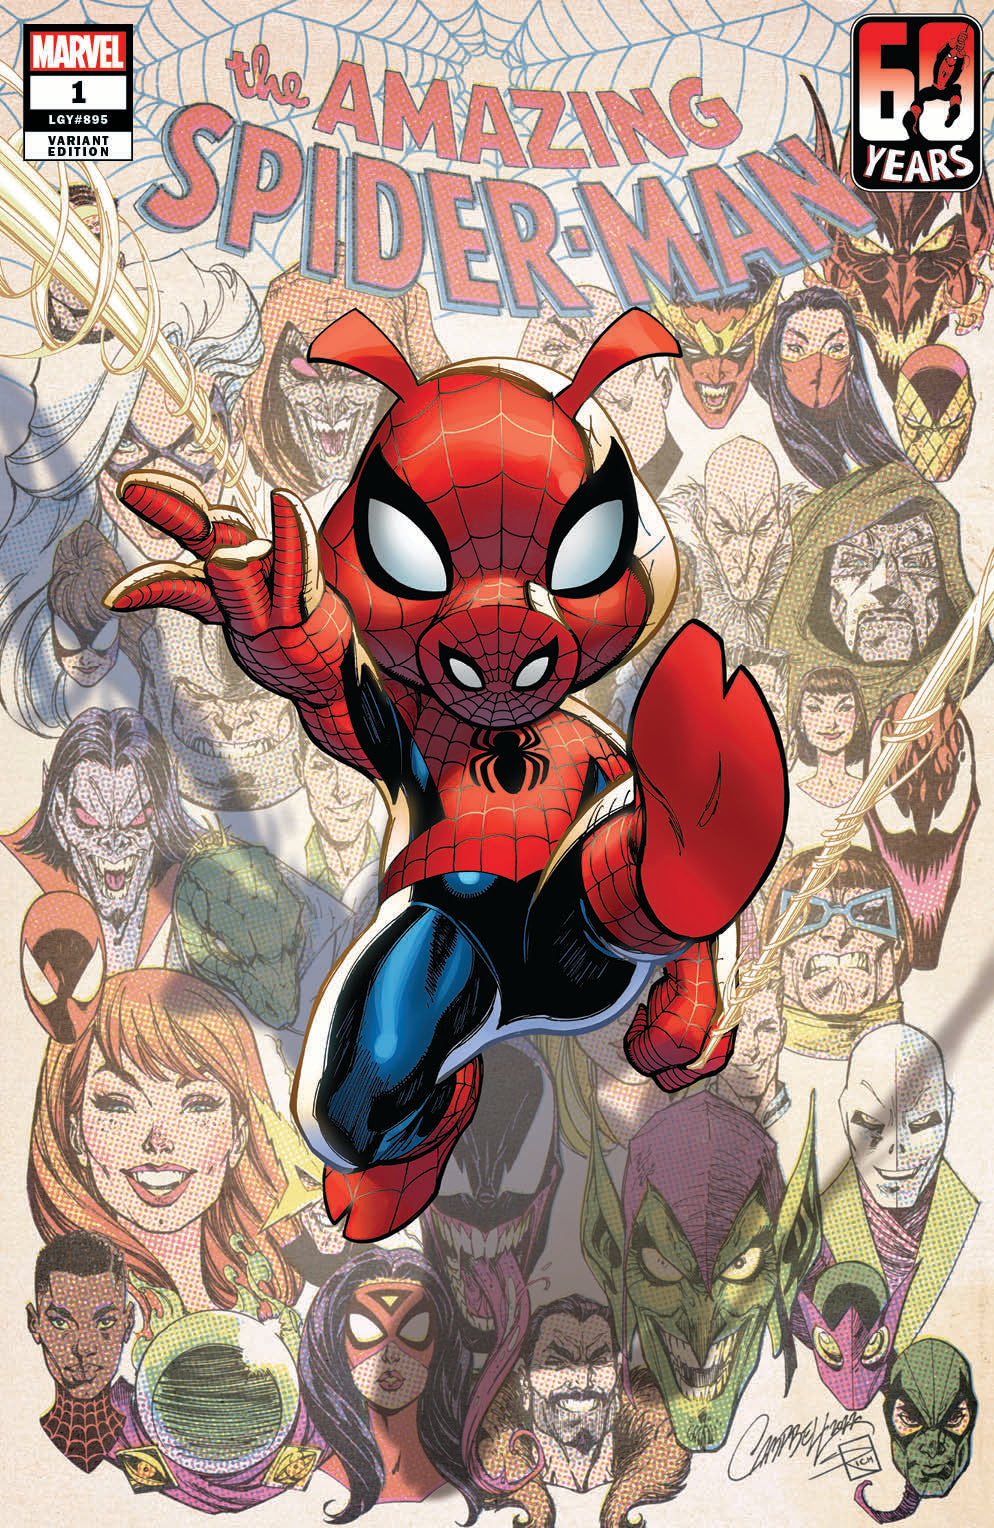 Original Art: Amazing Spider-Man #1 JSC EXCLUSIVE cover F